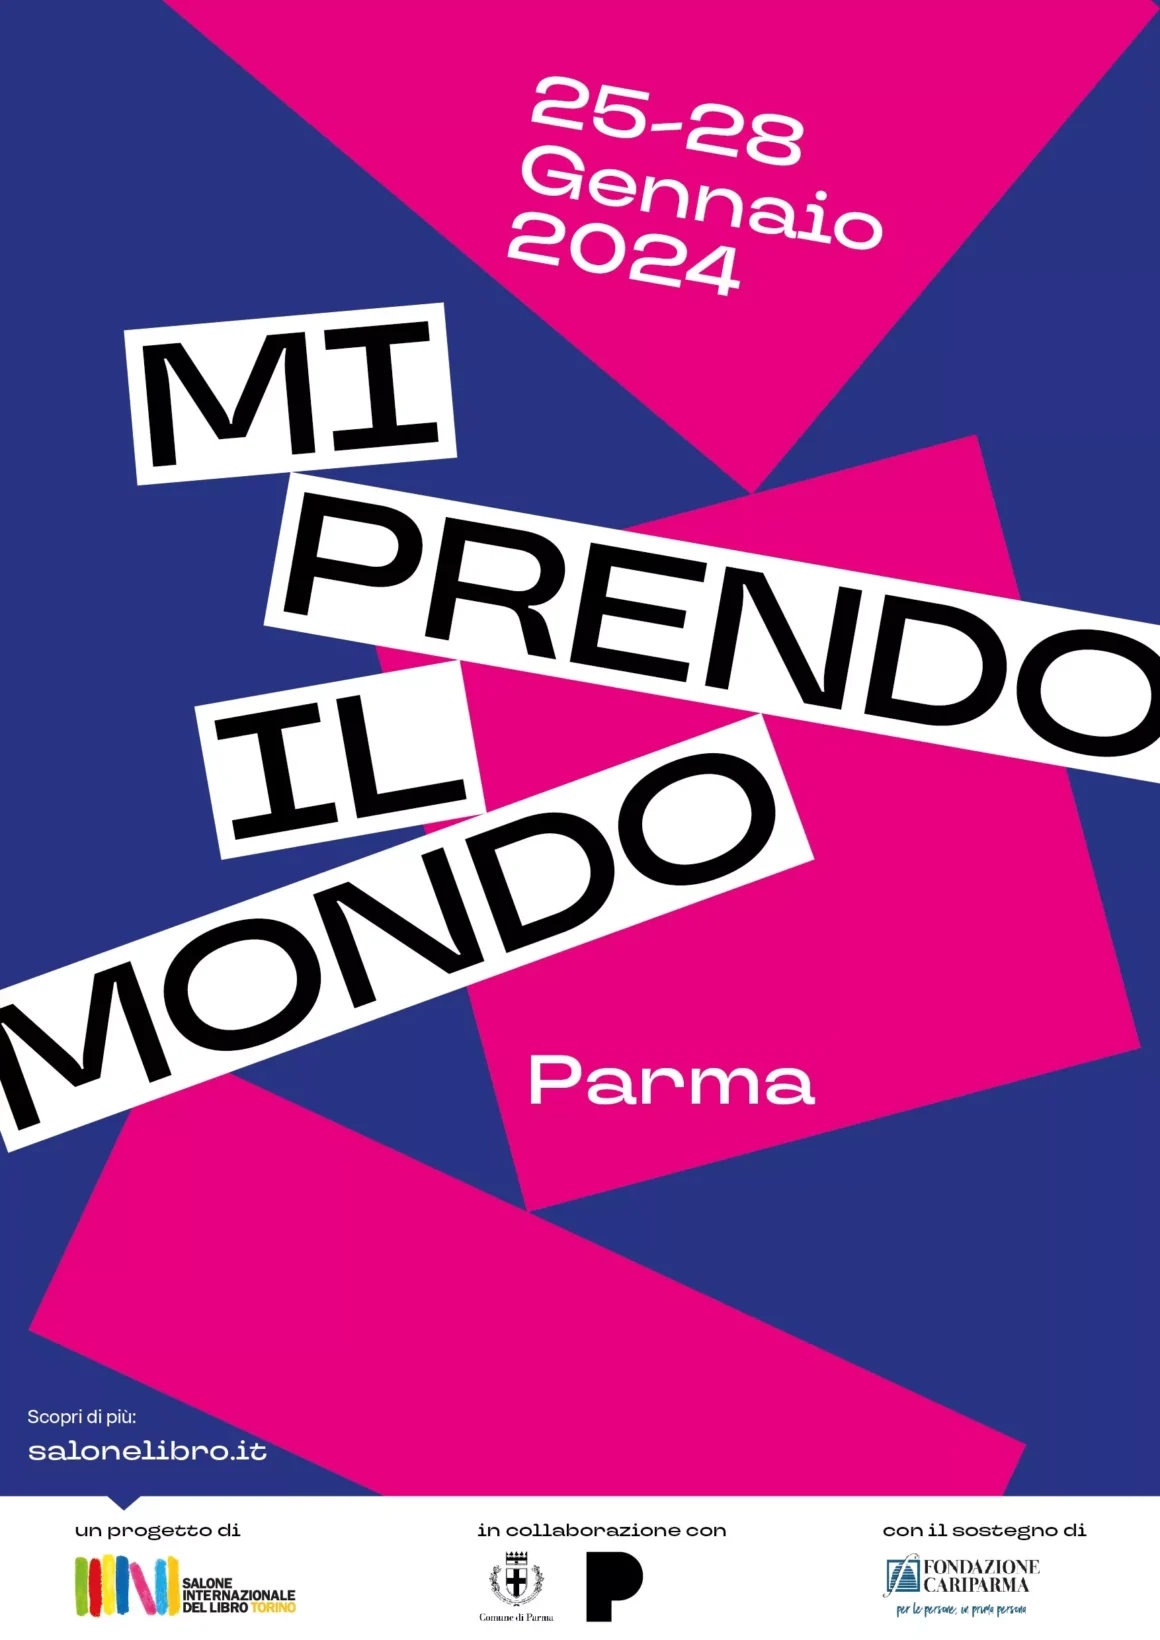 Giovani Protagonisti della Cultura: Il Salone del Libro di Torino Sbarca a Parma con “Mi prendo il mondo”